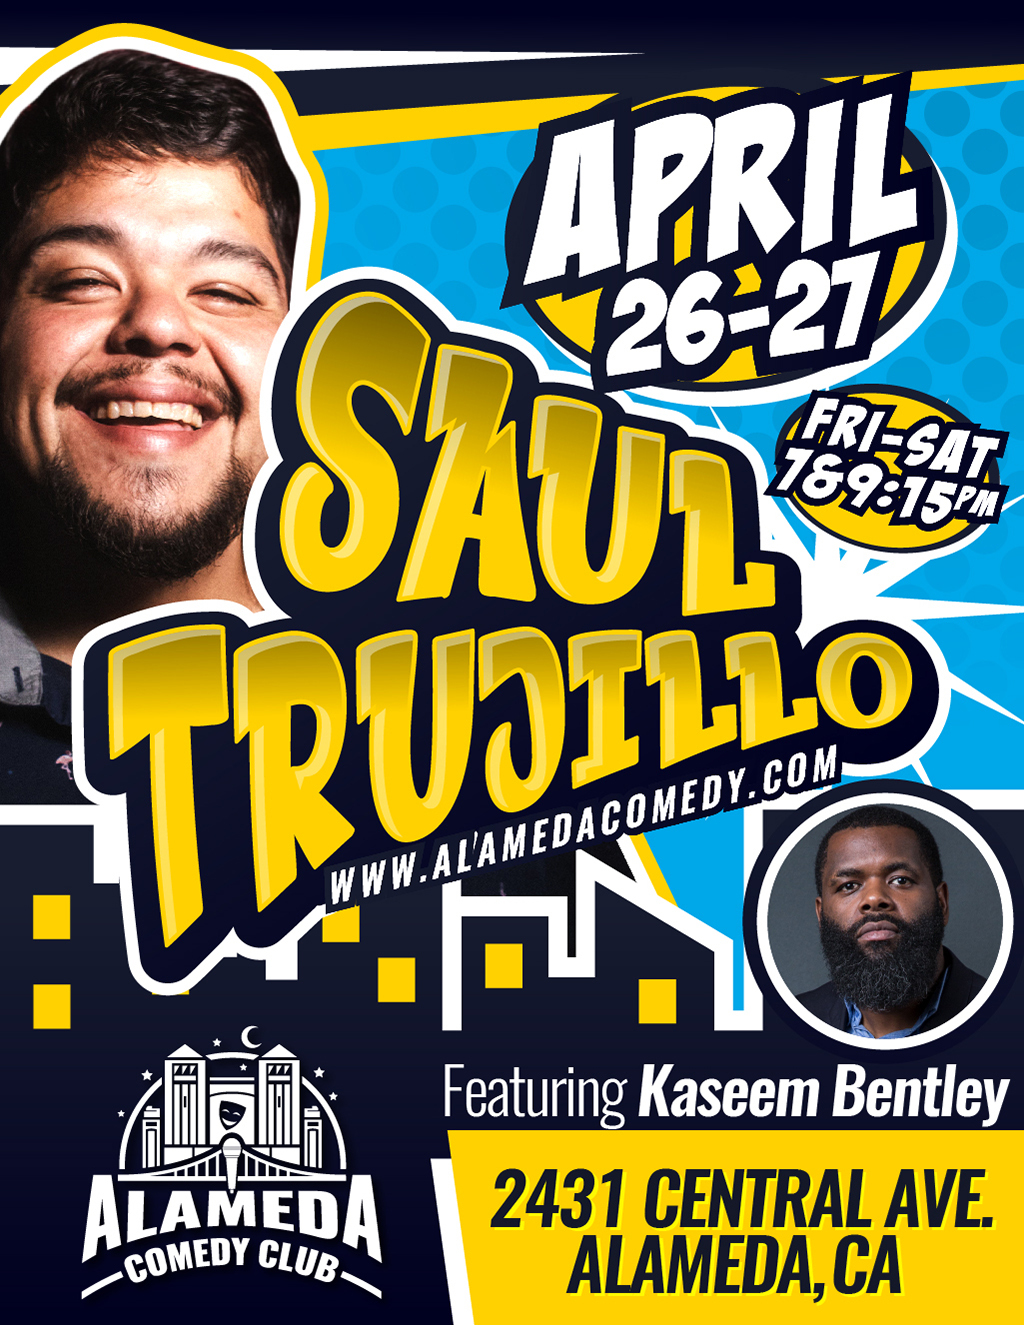 Alameda Comedy Club APRIL Featuring Kaseem Bentley at Alameda Comedy Club promotion flier on Digifli com